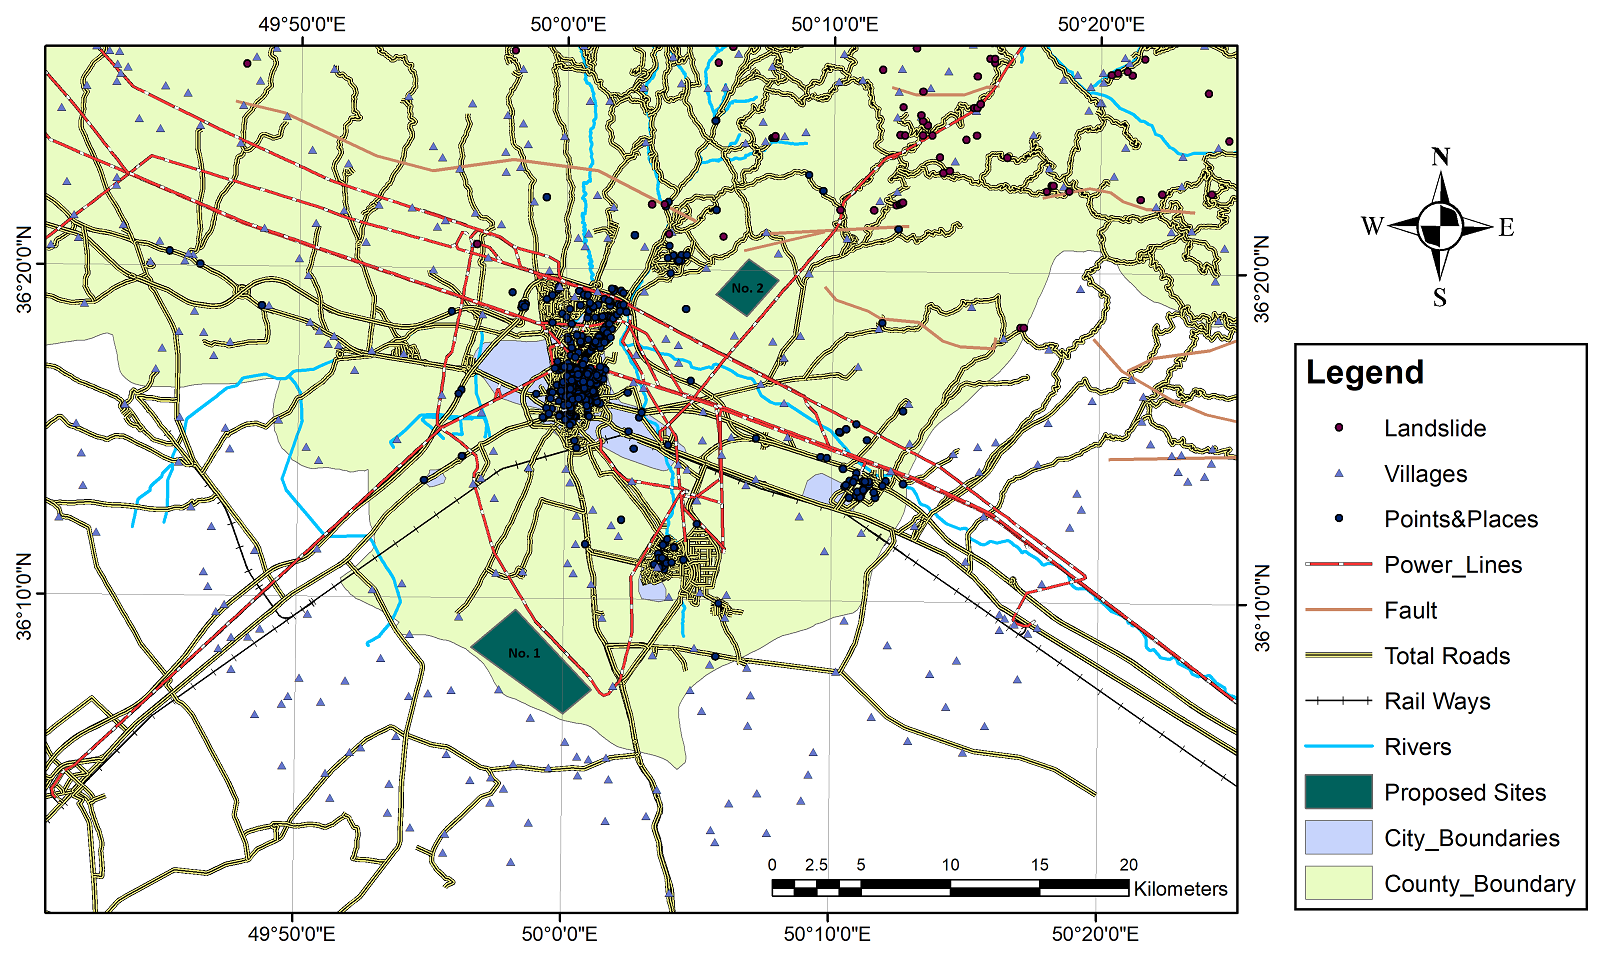 شکل 19. دو سایت پیشنهادی در پروژه مکان یابی GIS برای محل دفن پسماندهای ساختمانی برای شهرستان قزوین